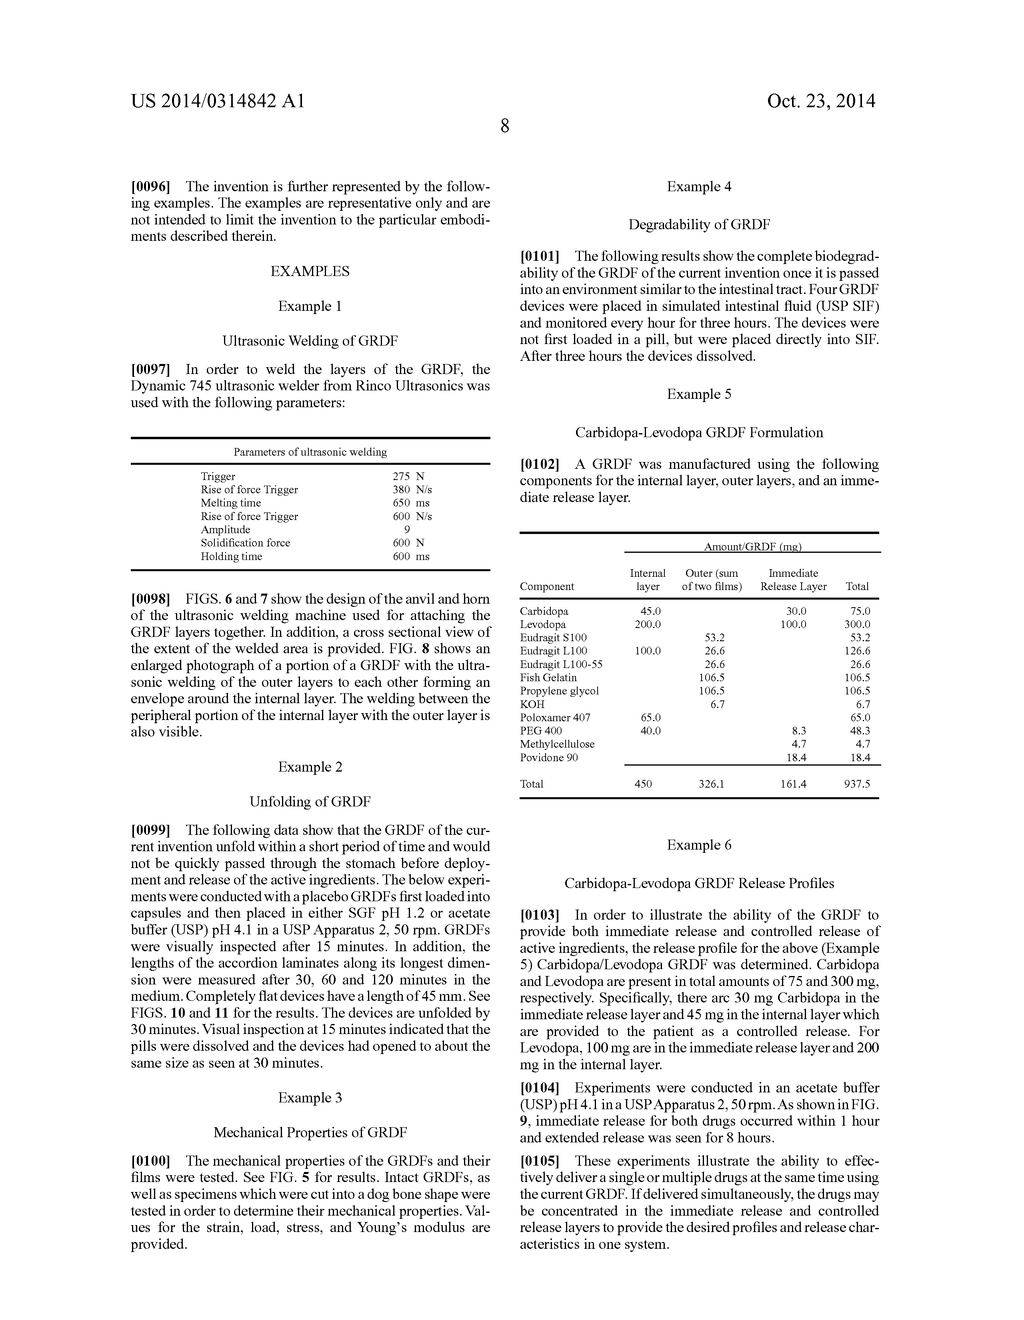 CARBIDOPA/LIPODOPA GASTRORETENTIVE DRUG DELIVERY - diagram, schematic, and image 22